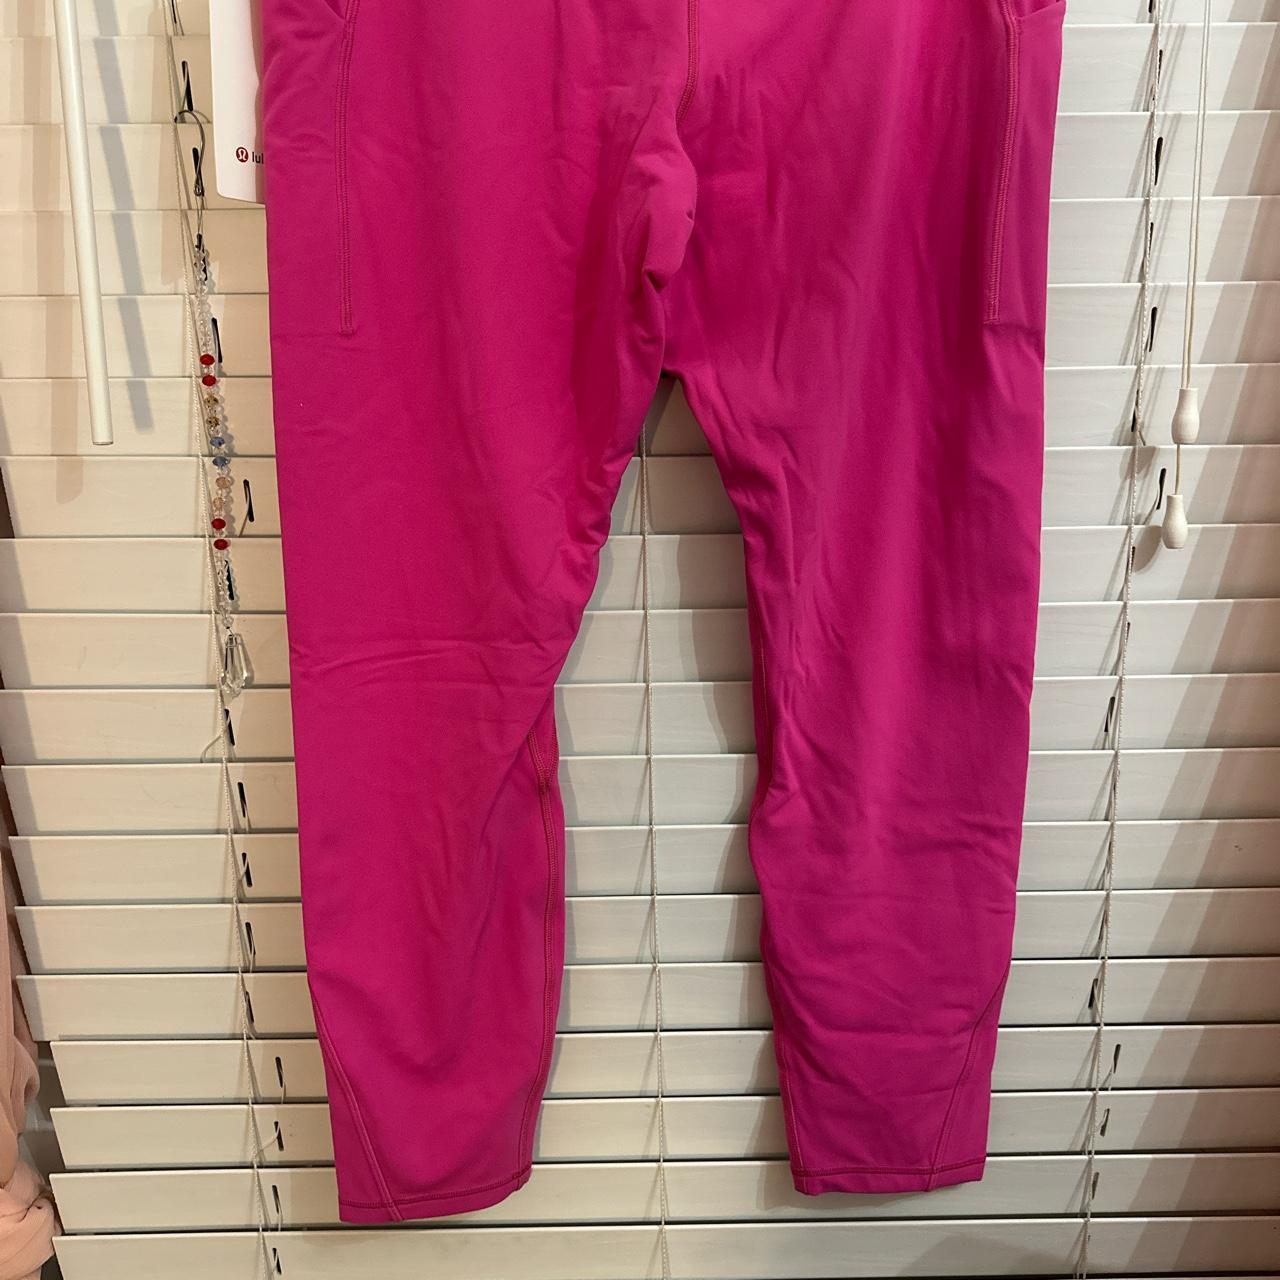 Sonic Pink Lululemon leggings , Never worn, in